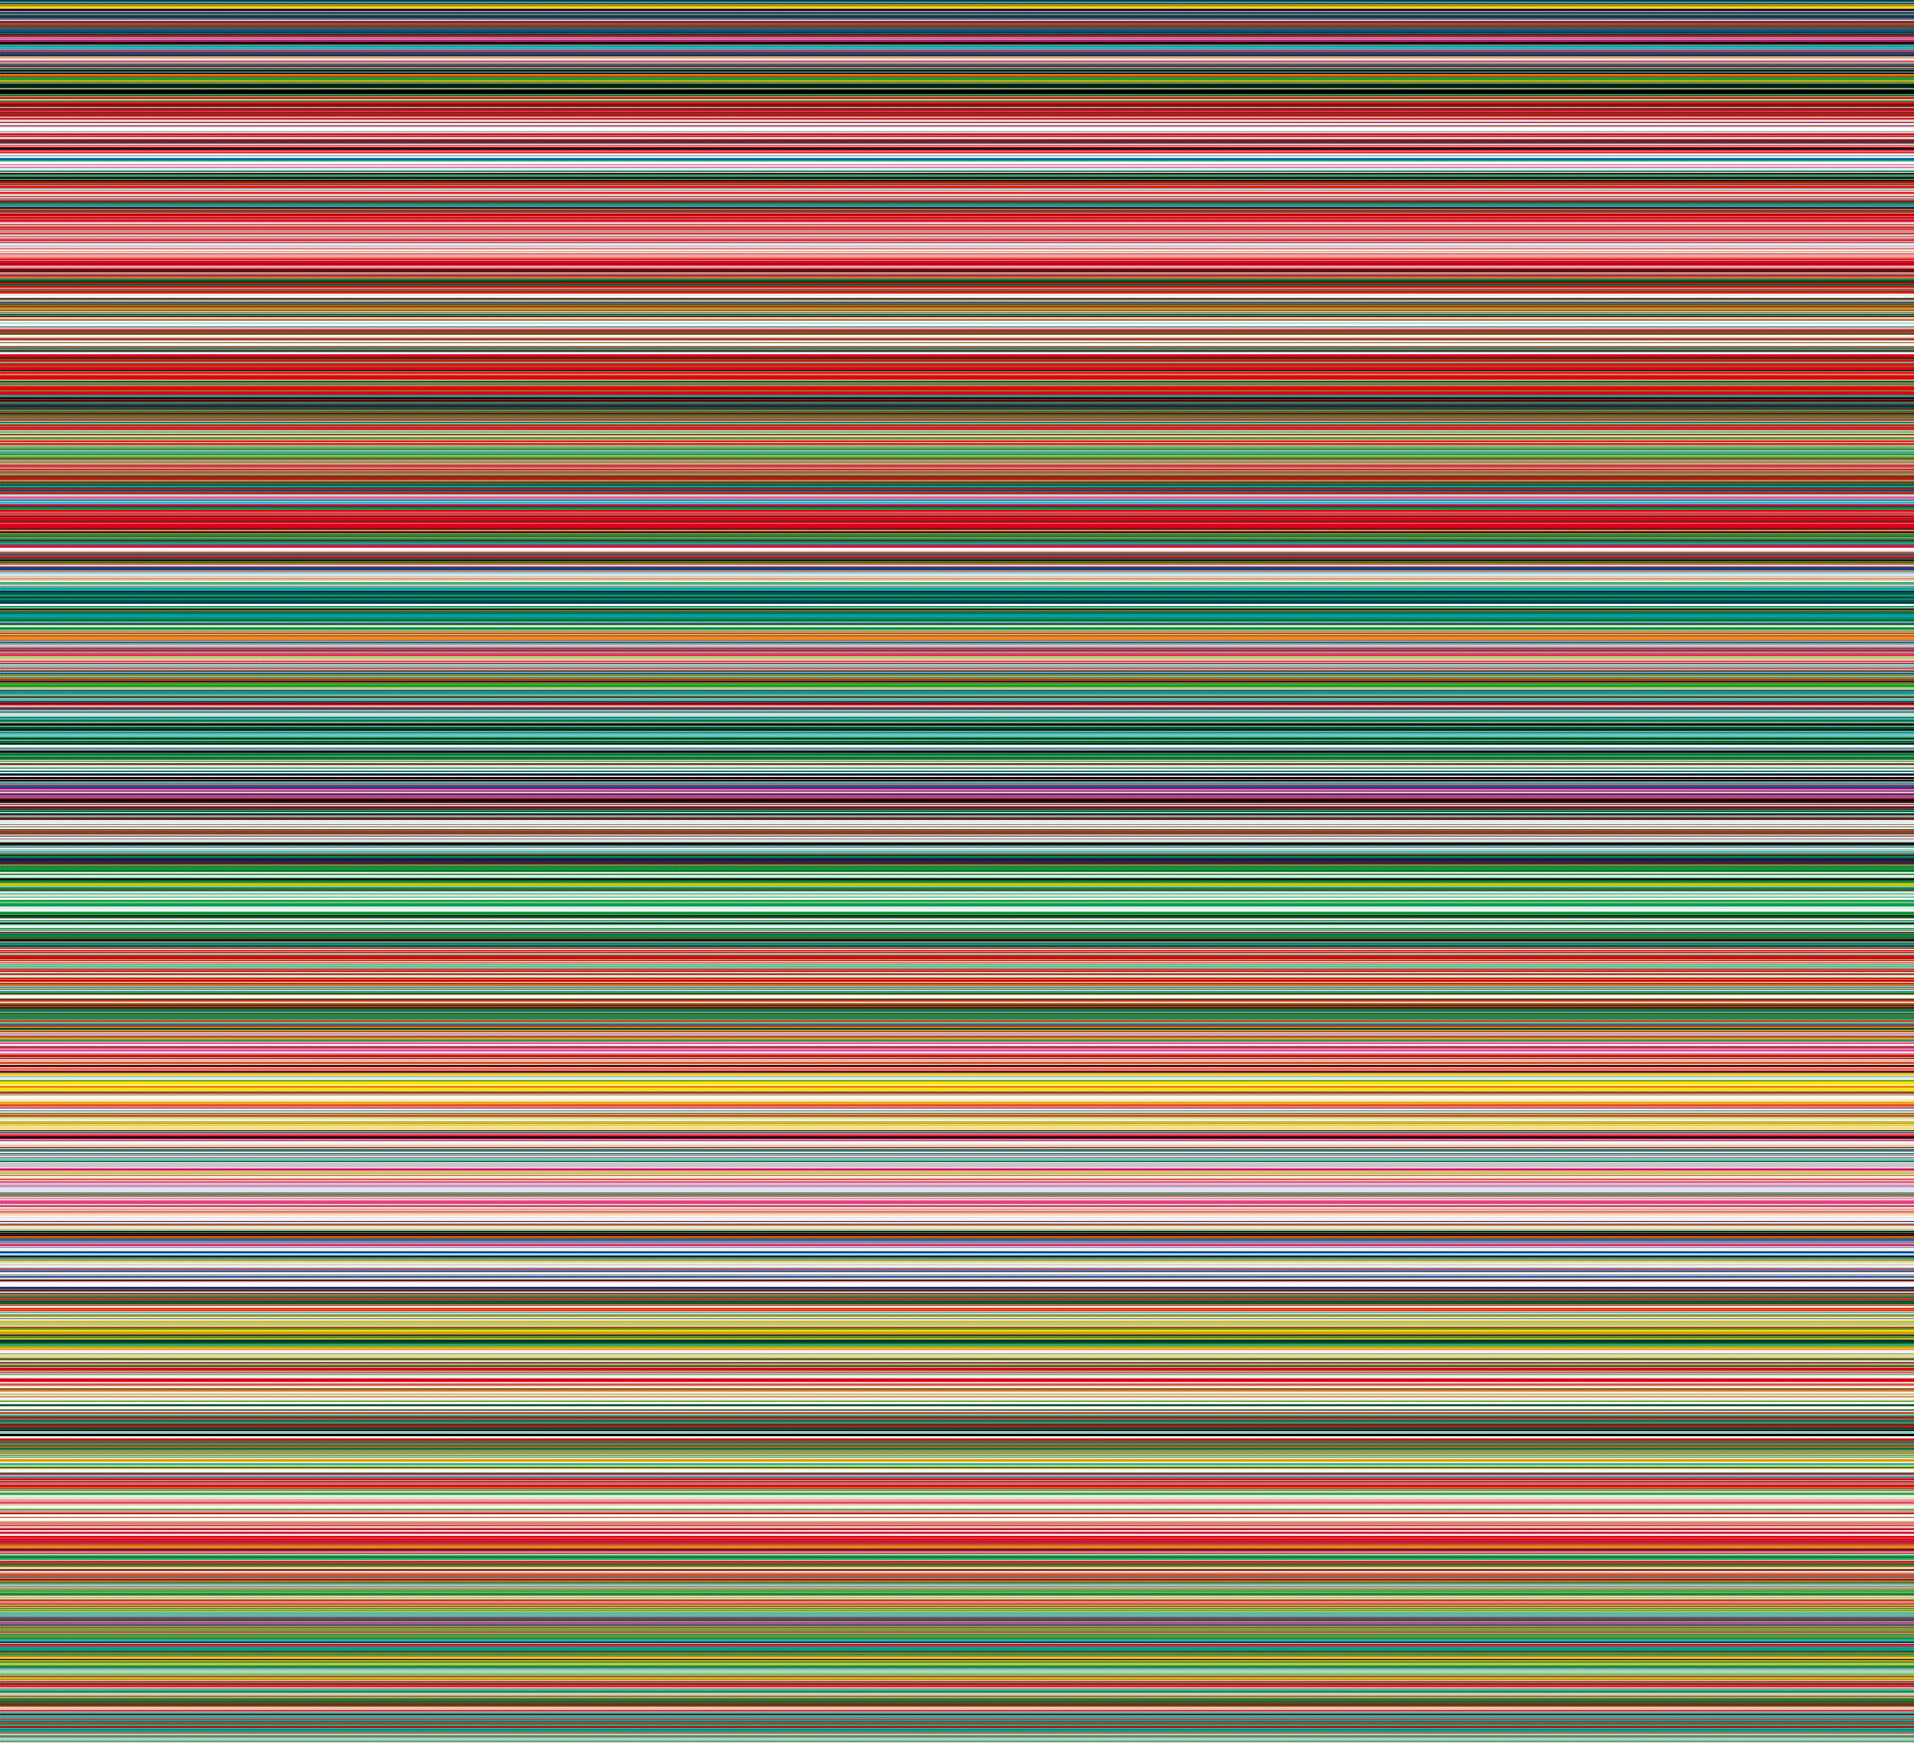 نوار ۹۲۷-۹ by Gerhard Richter - ۲۰۱۲ - ۲۱۰×۲۳۰ cm 